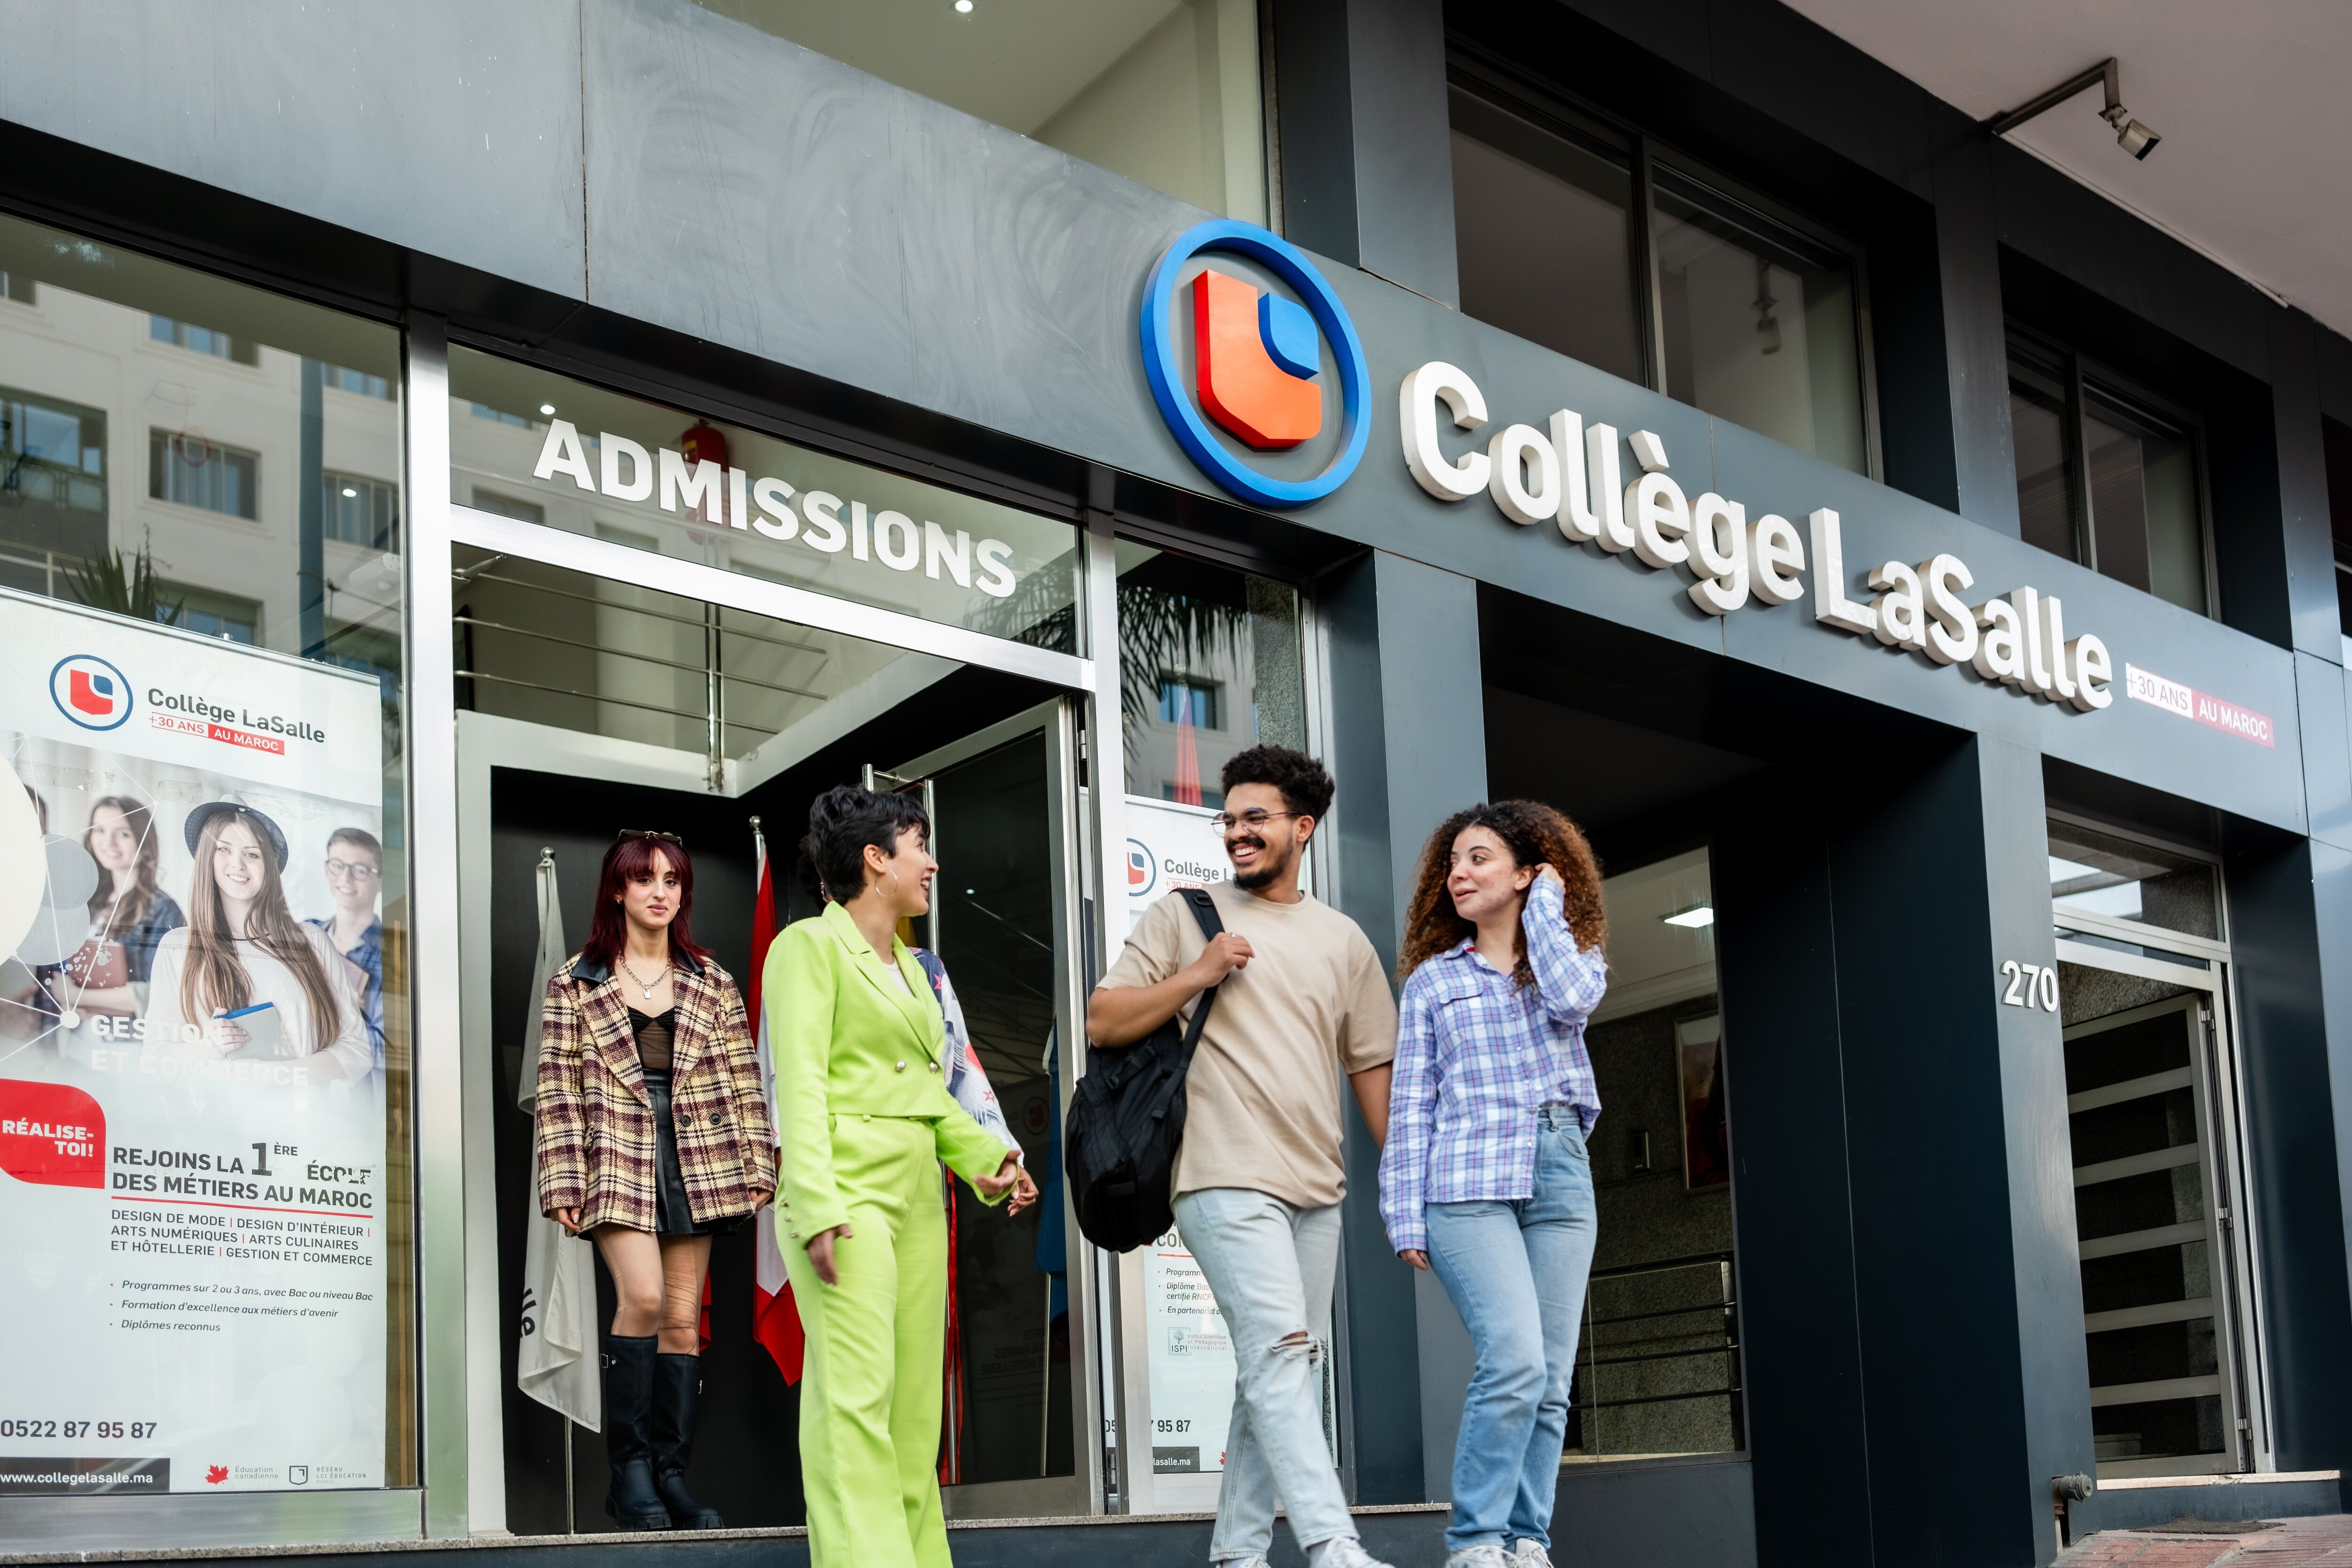 Quatre étudiants diversifiés conversent devant l'entrée des admissions du Collège LaSalle.